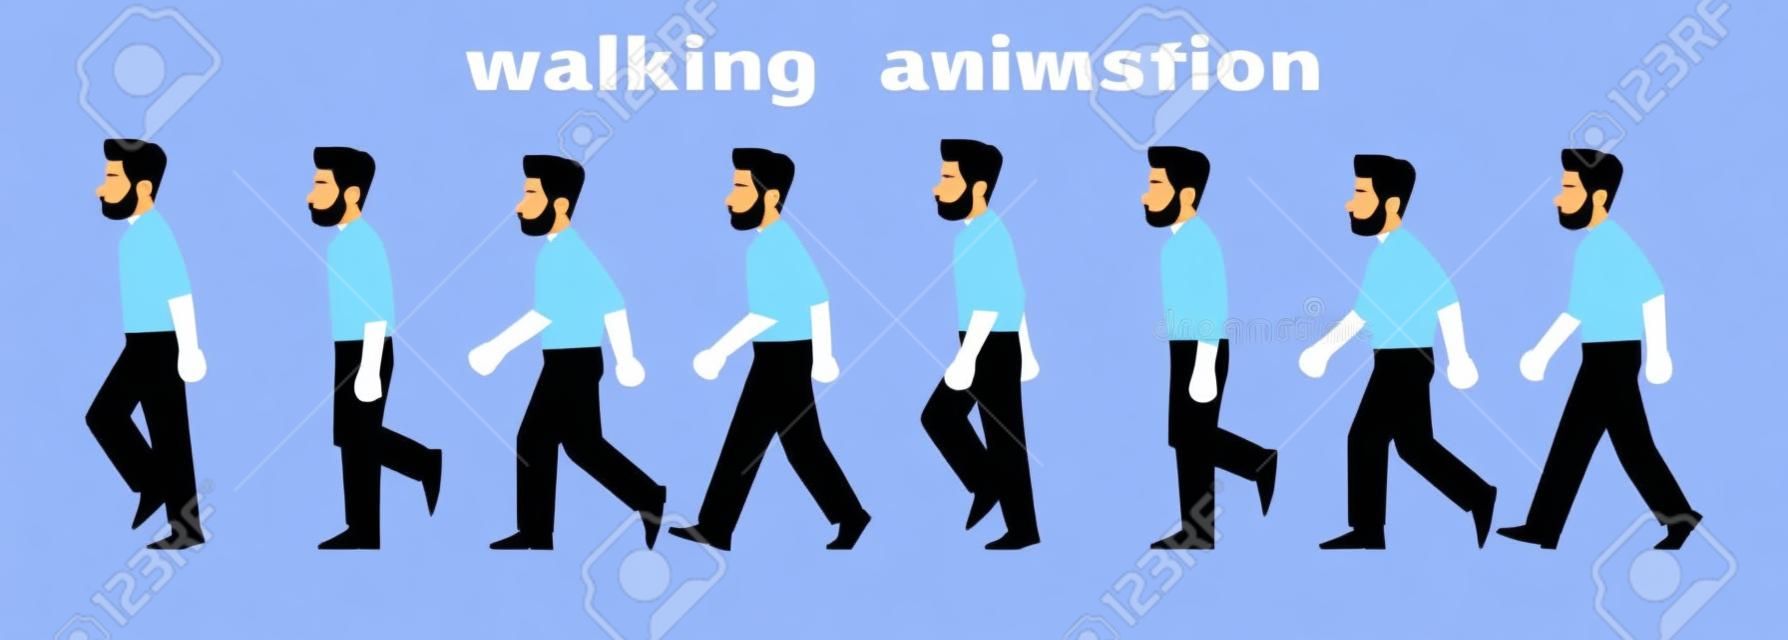 Man karakter wandelen animatie. Zakenman wandelt, een stap voor stap cyclus van foto's. Vector illustratie in cartoon stijl